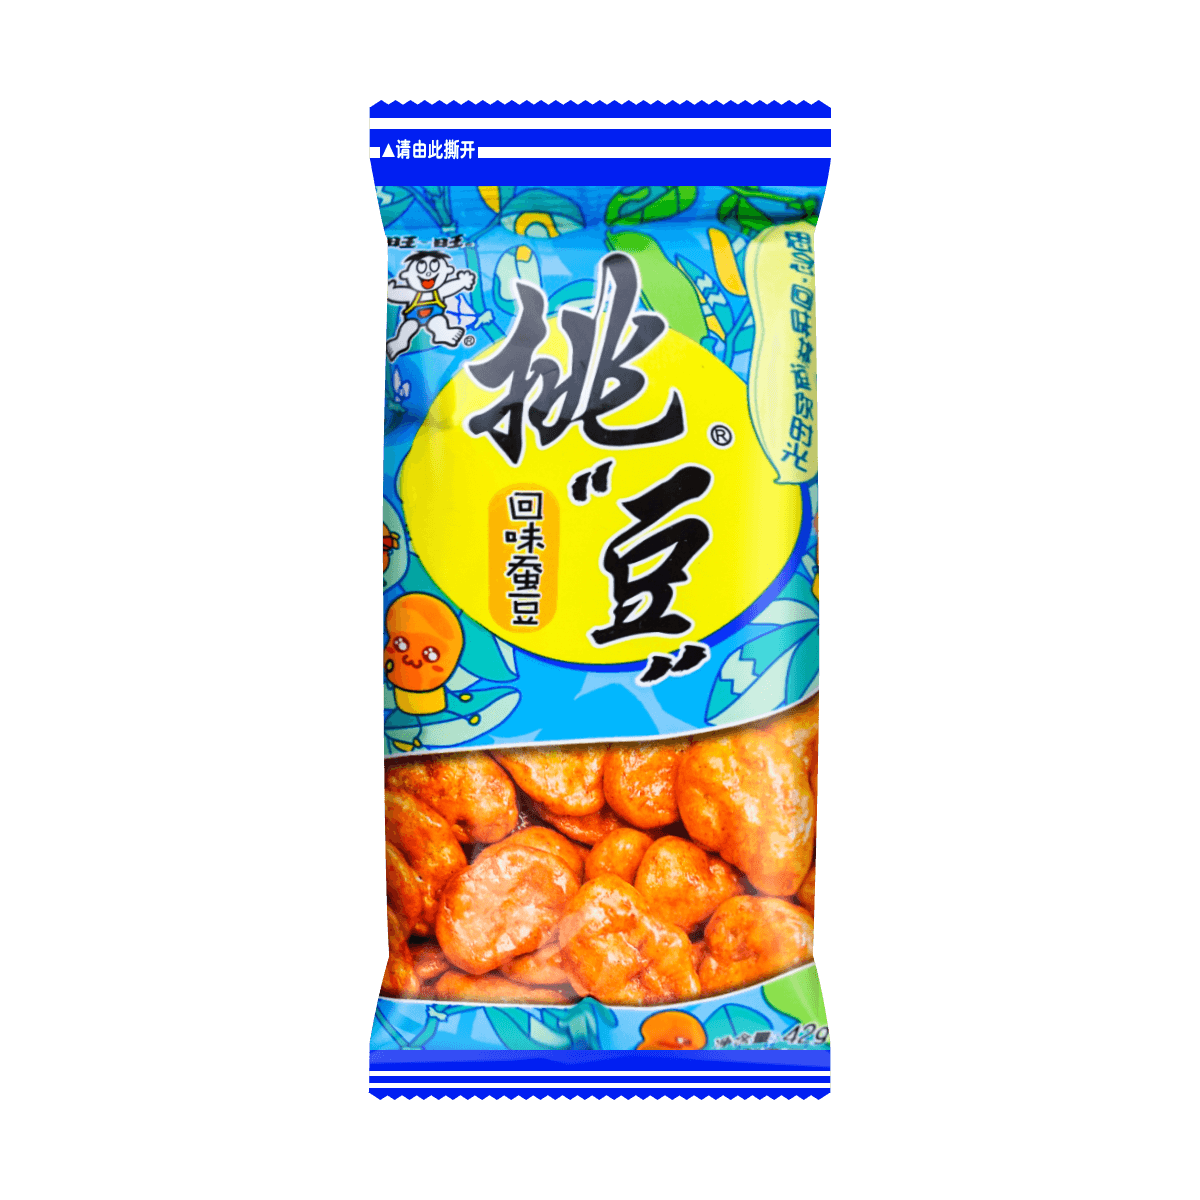 台湾旺旺 挑豆系列 回味蚕豆 42g 怎么样 - 亚米网